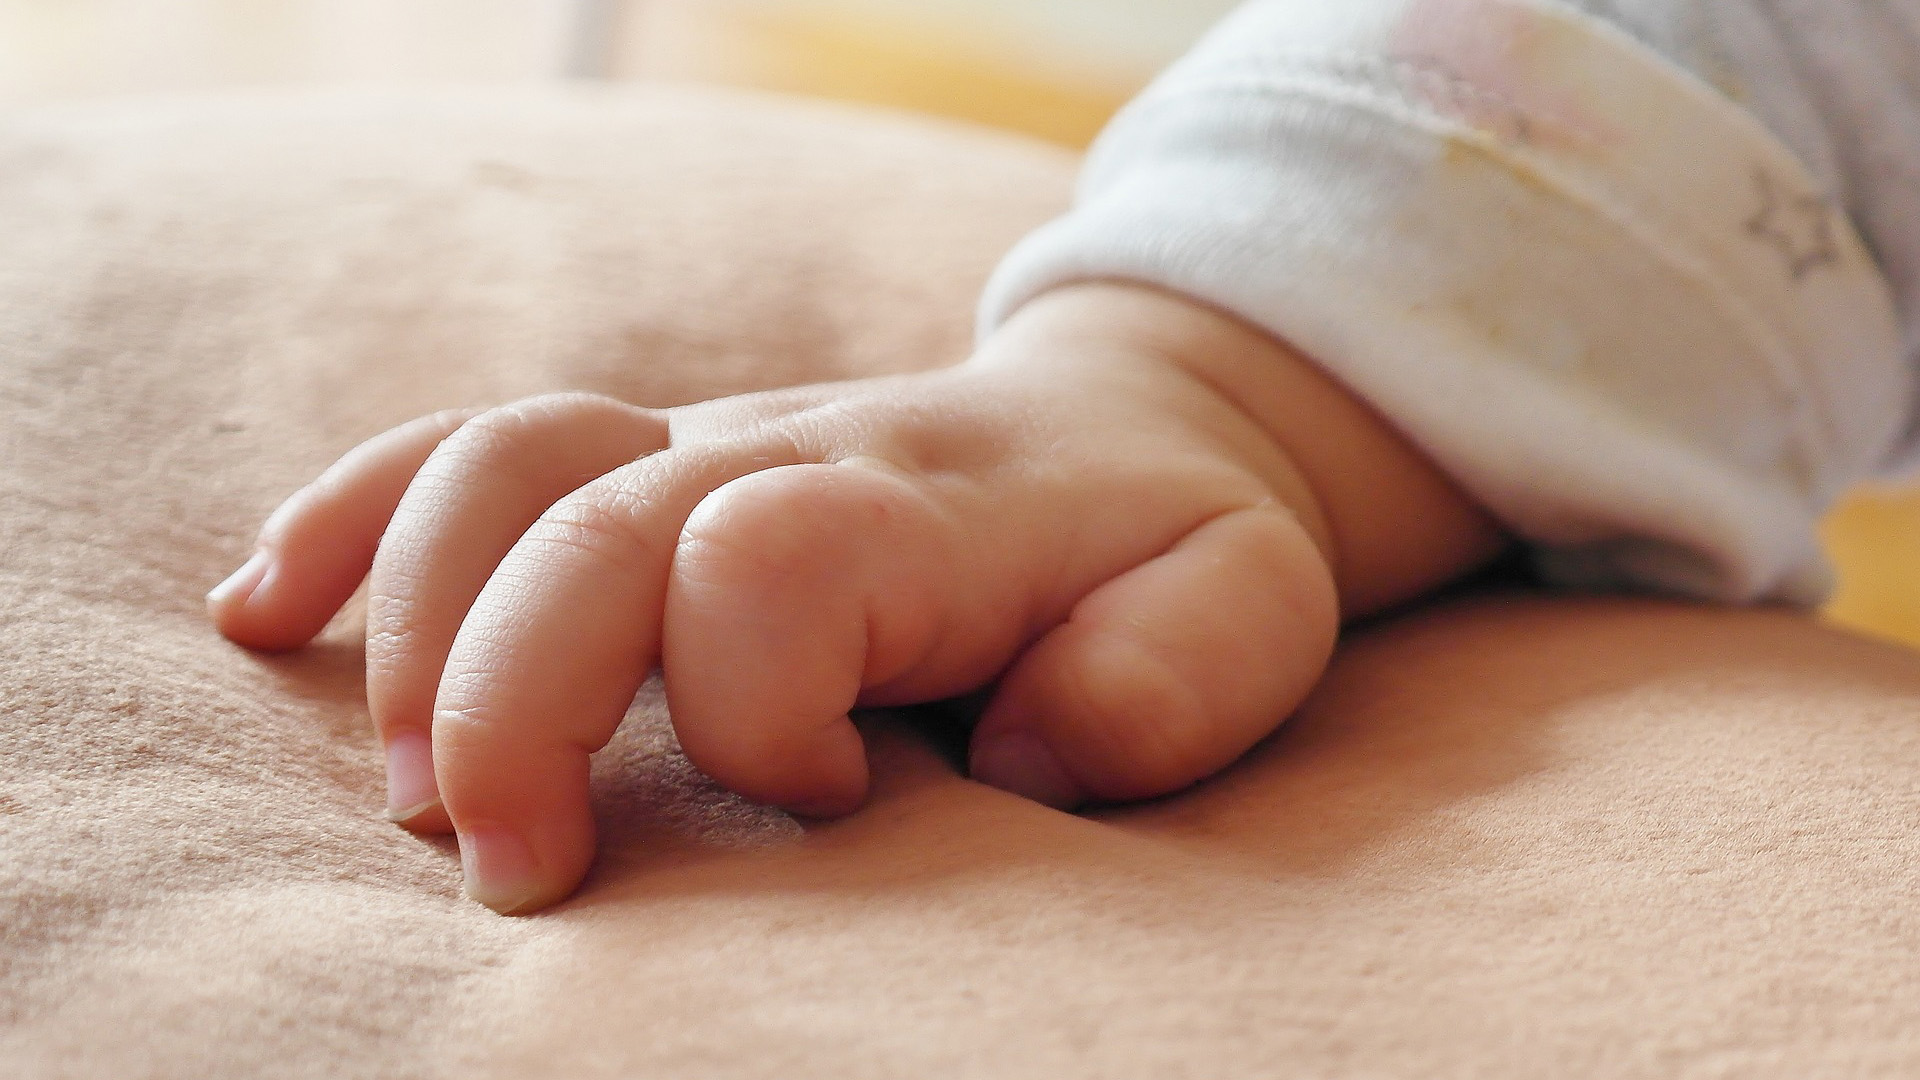 Man sieht die Hand eines Babys mit leicht gekrümmten Fingern auf einer Decke liegen.